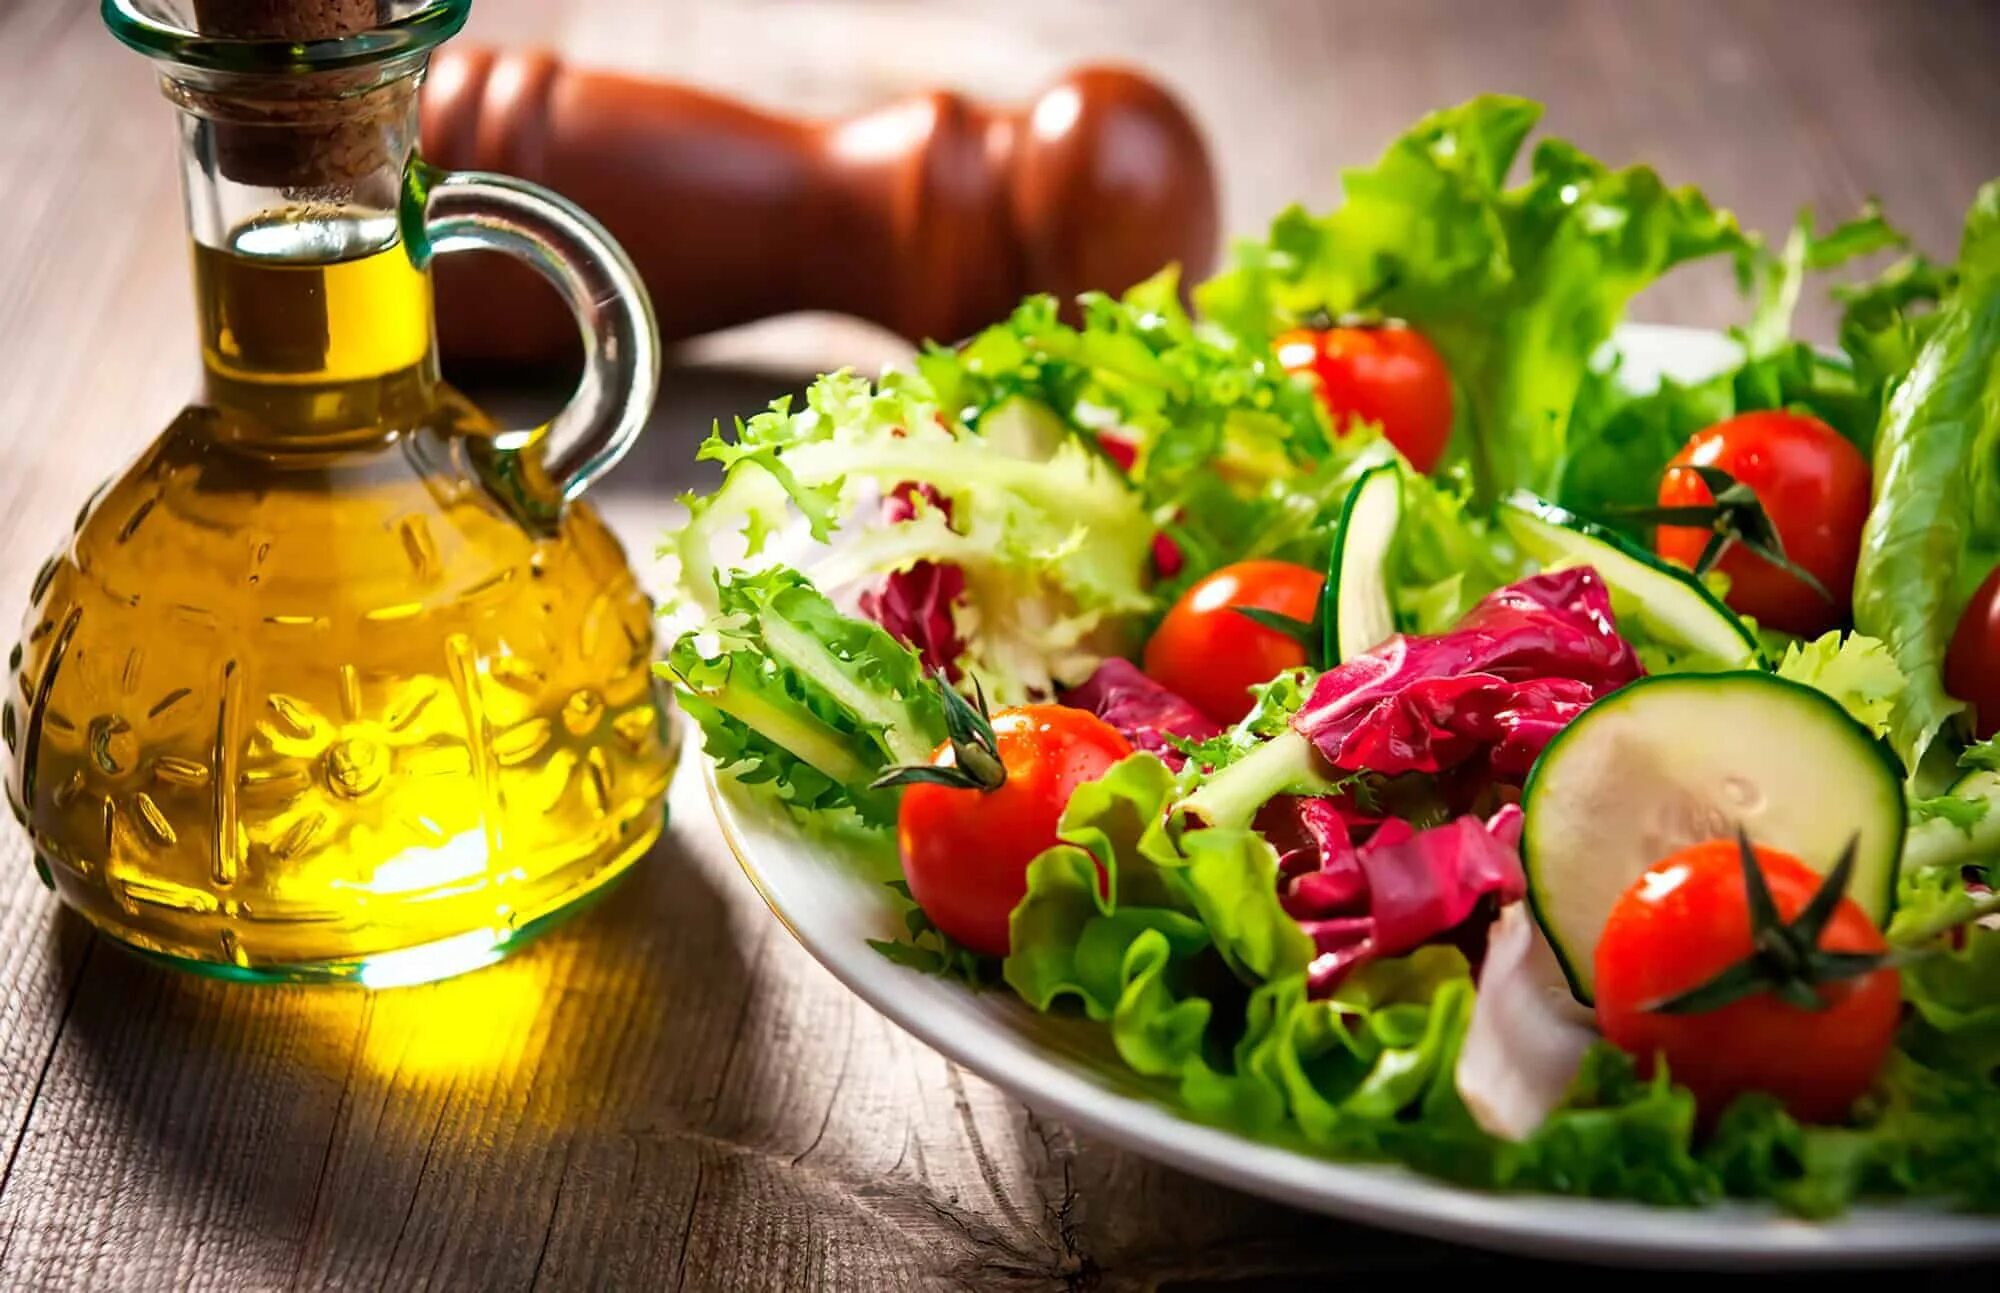 Соус для салата из свежих овощей заправки. Салат с маслом растительным. Салат с оливковым маслом. Салат овощной с маслом. Растительное масло и овощи.